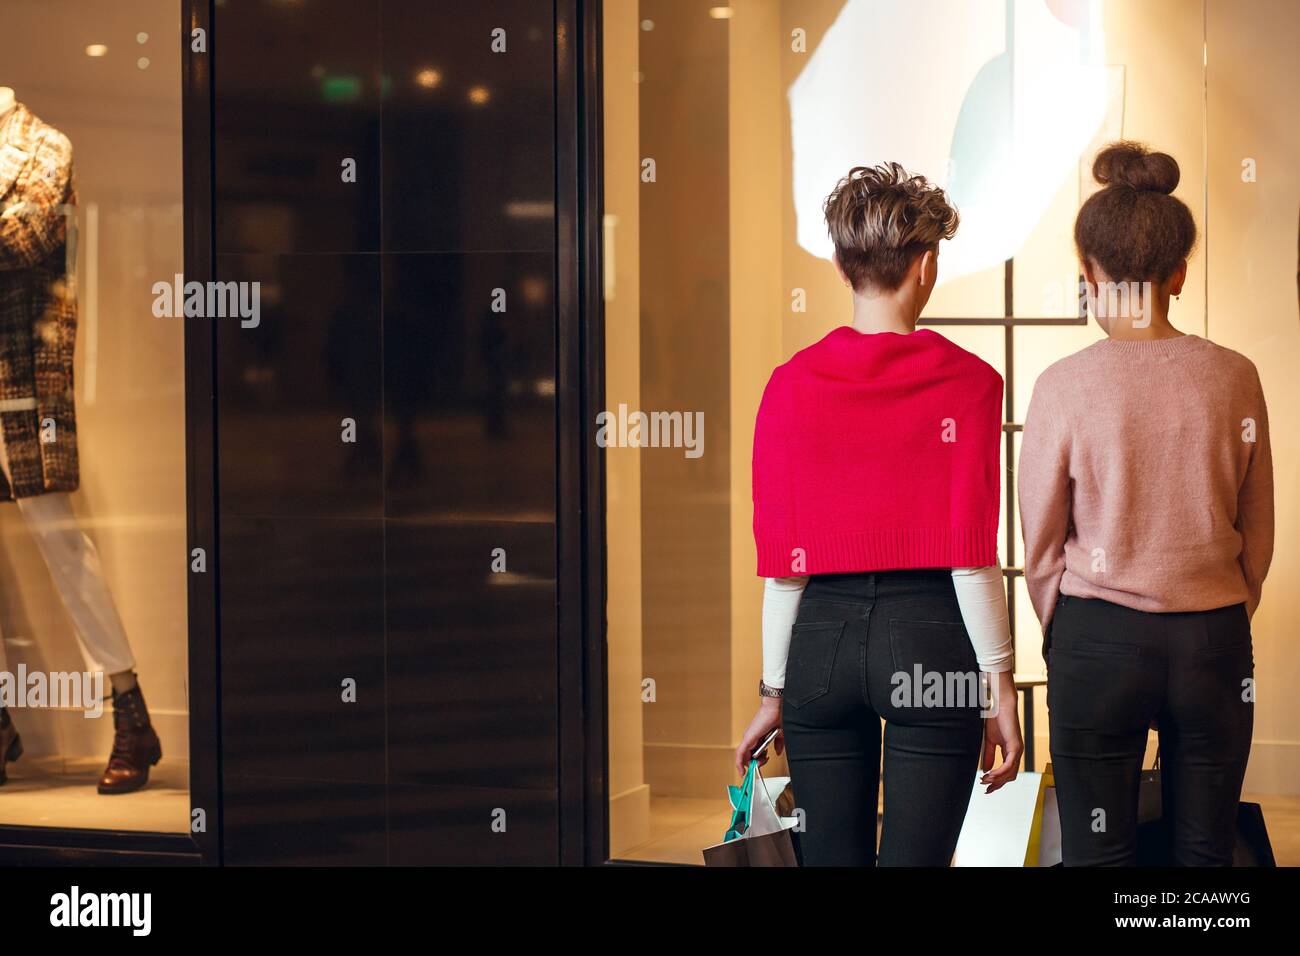 Zwei weibliche Shopoholic Freunde Blick auf Schaufenster der Lady s Wear Frauen Kollektion Boutique, Rückansicht. Stockfoto